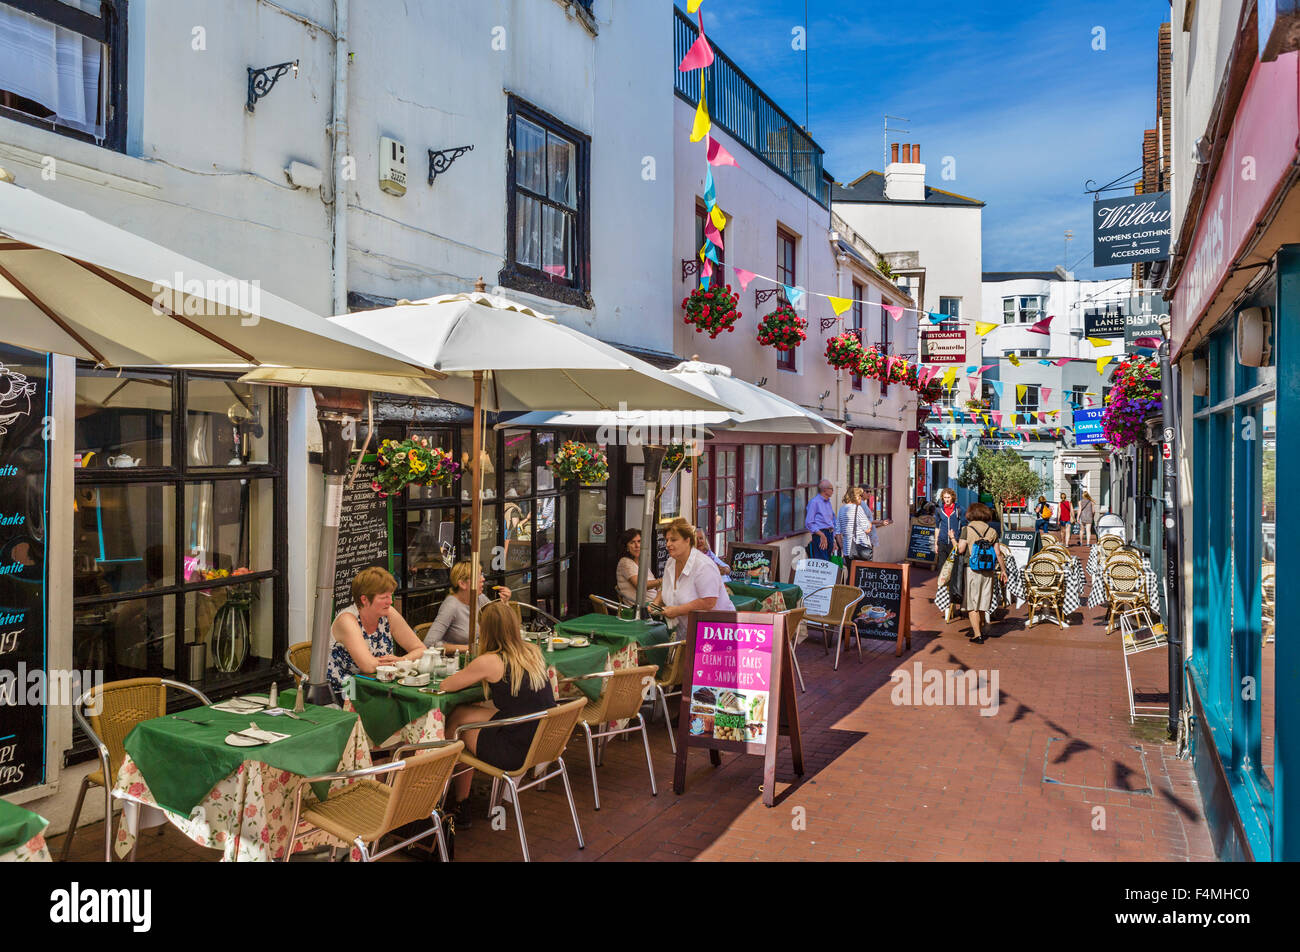 Brighton, les voies. Cafés, bars, restaurants et magasins sur la rue du marché dans le domaine de voies de Brighton, East Sussex, England, UK Banque D'Images